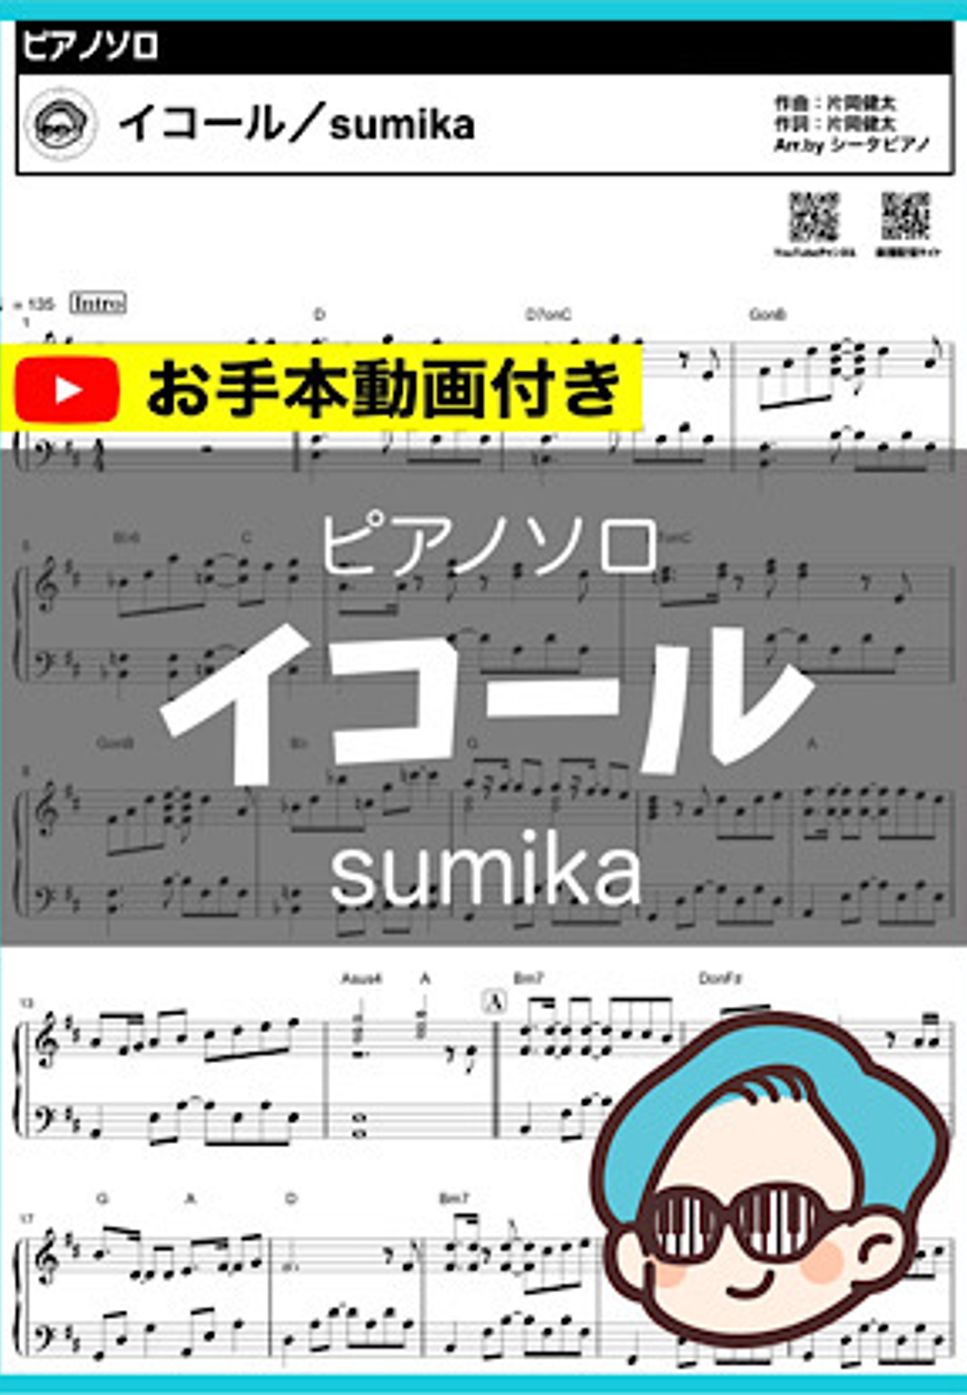 sumika - イコール by シータピアノ